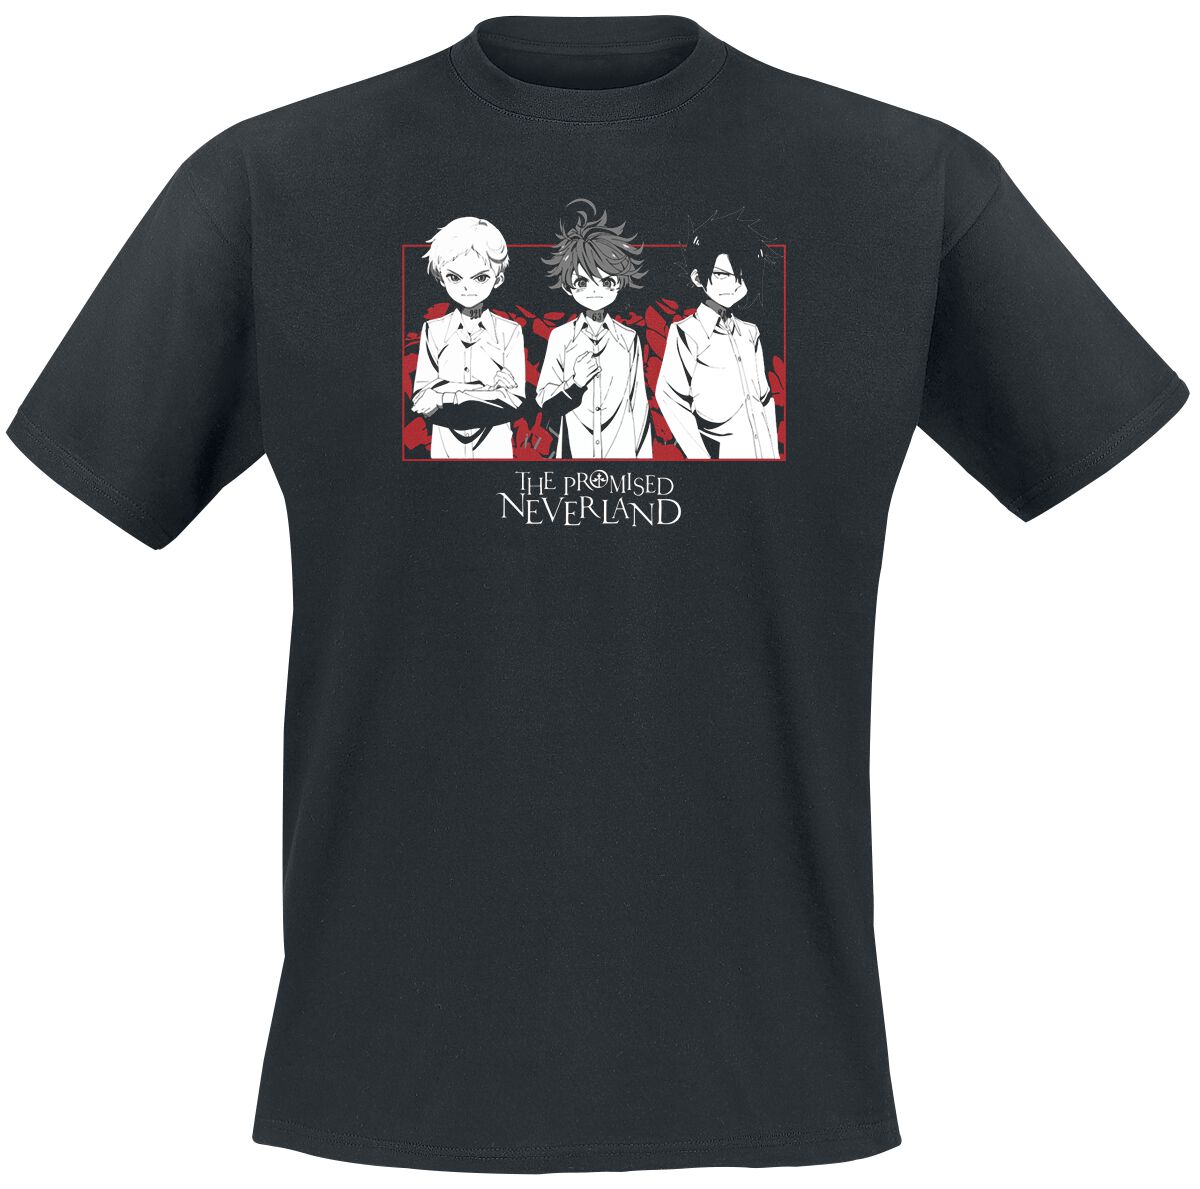 the promised neverland - anime t-shirt - emma, norman - s bis xl - fÃ¼r mÃ¤nner - grÃ¶ÃŸe m - - lizenzierter fanartikel schwarz uomo